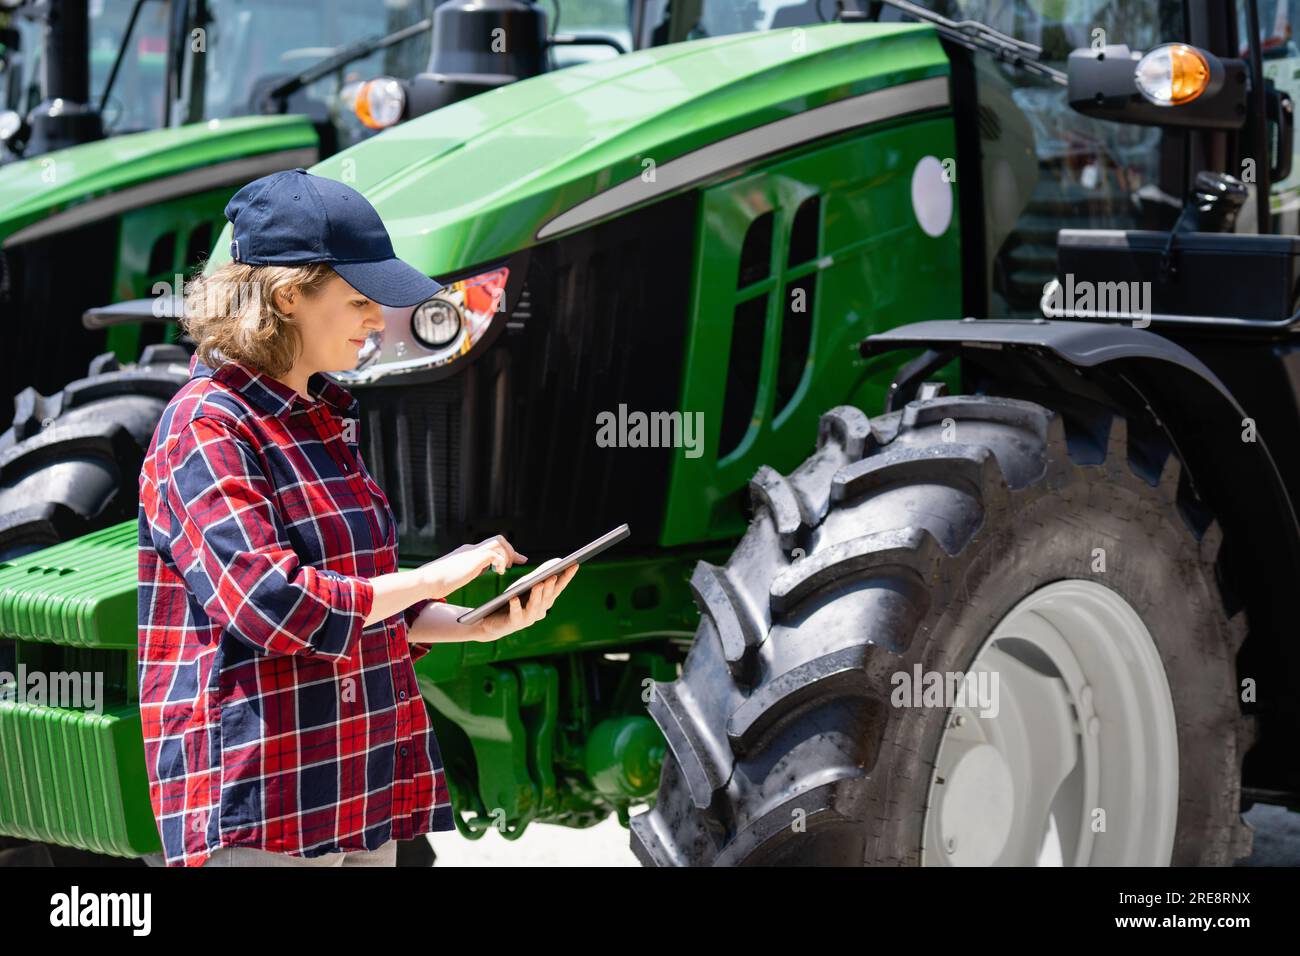 Femme agriculteur avec une tablette numérique sur le fond d'un tracteur agricole. Banque D'Images